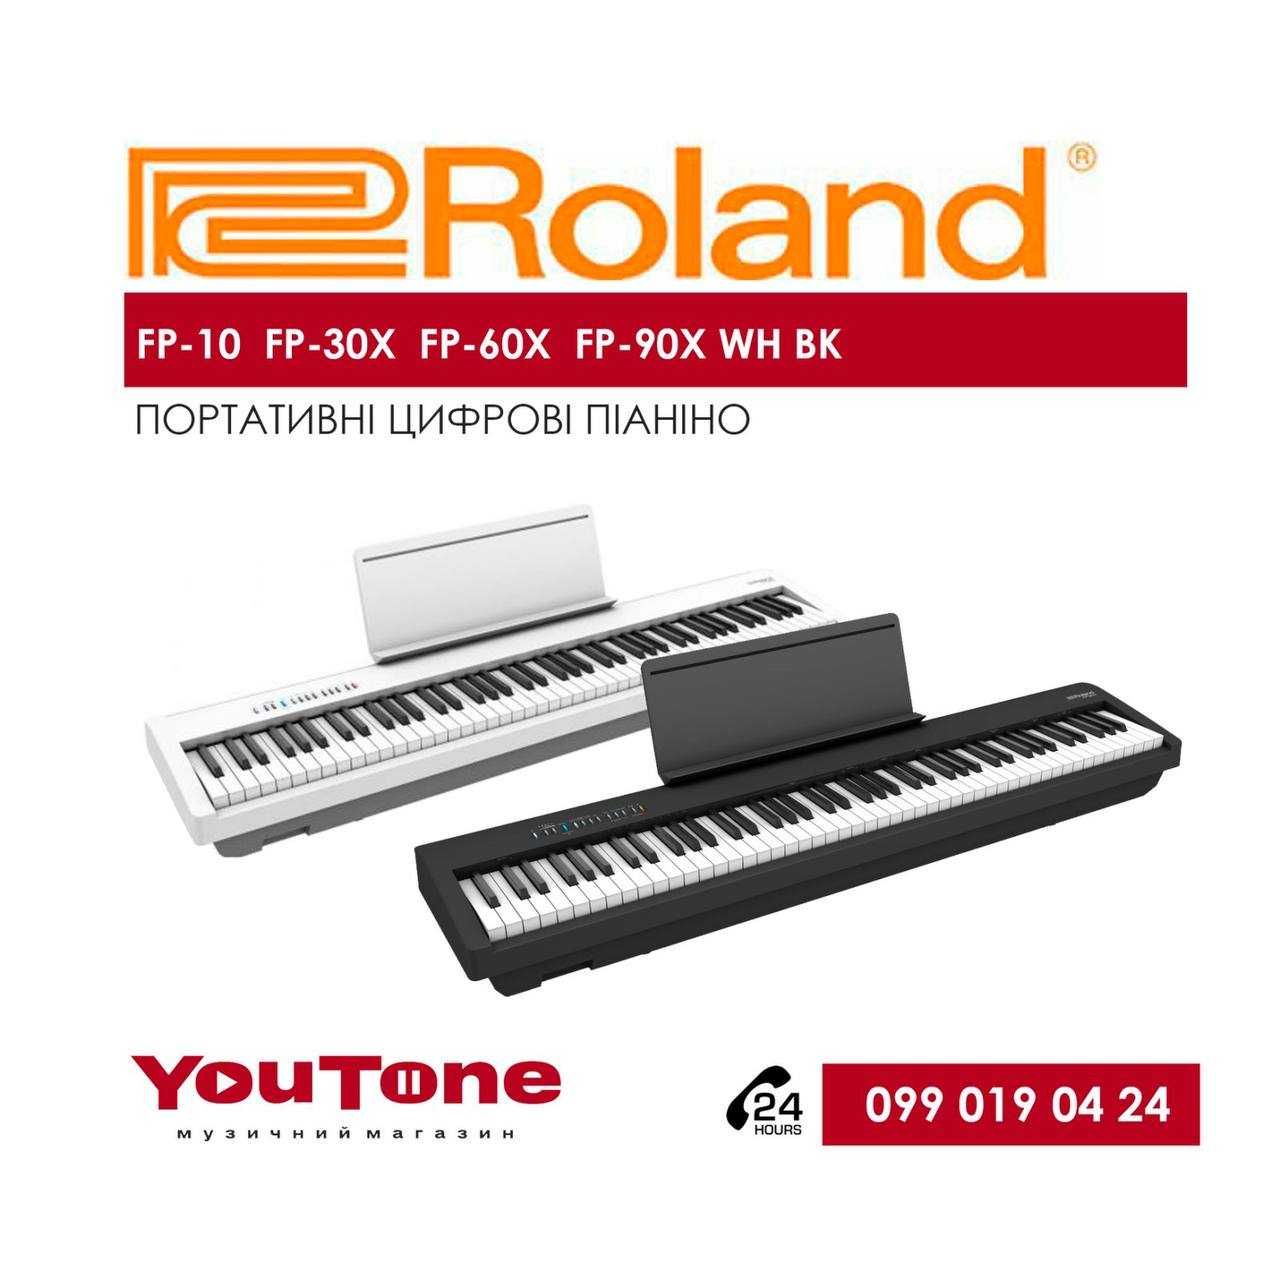 Цифрове піаніно Roland FP-10, FP-30X, FP-60X, FP-90X WH BK